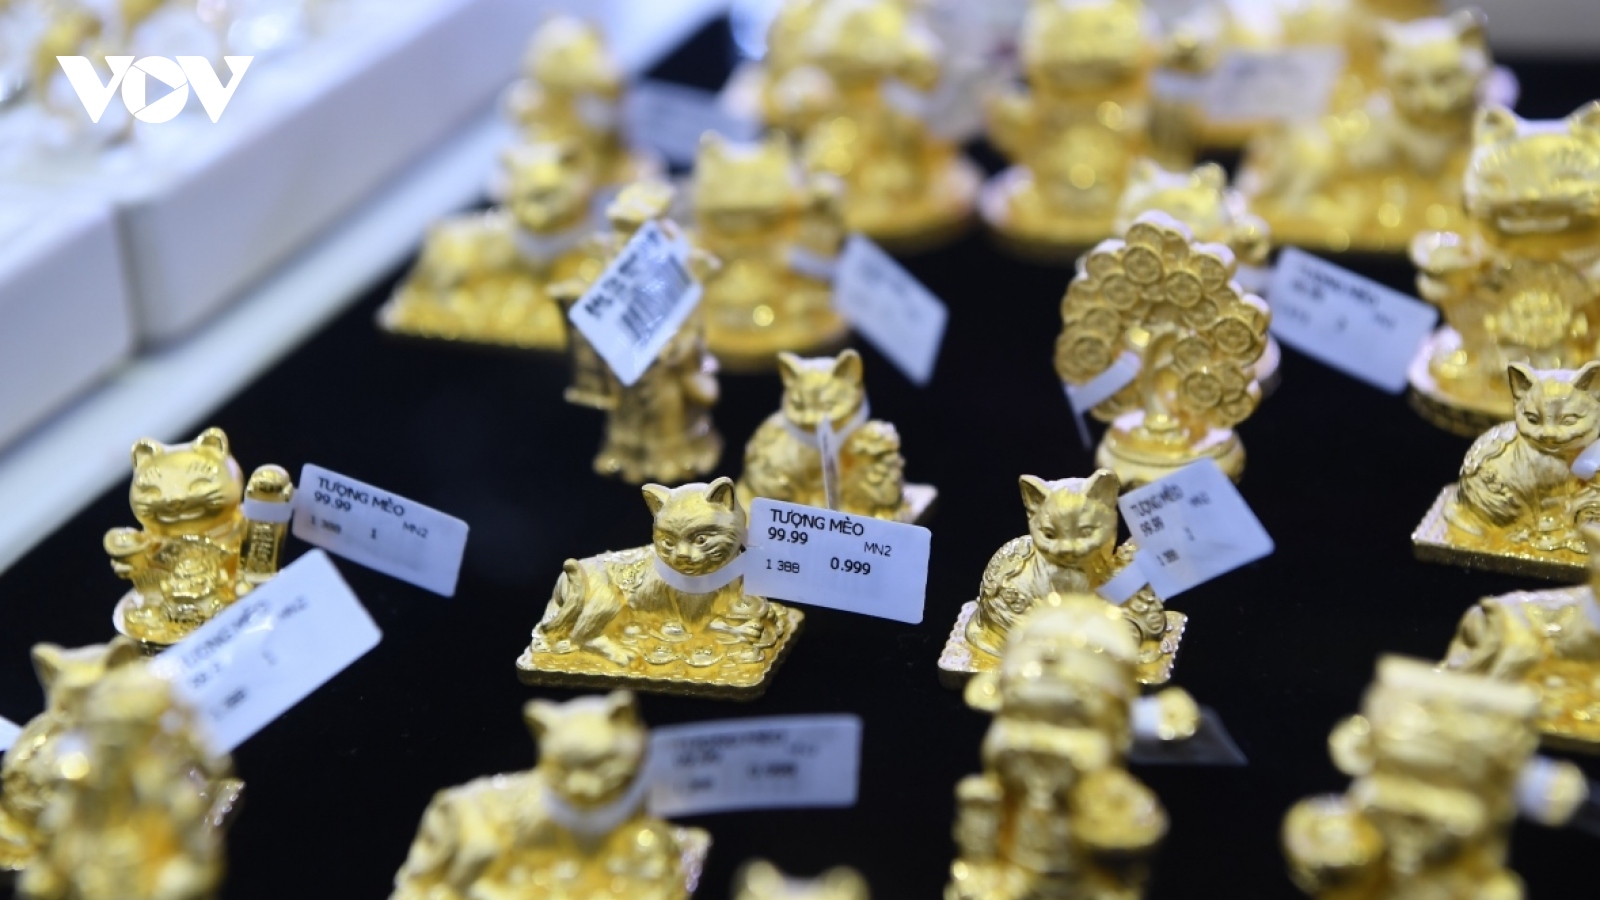 Giá vàng hôm nay 12/9: Vàng SJC giảm nhẹ về mức 68,85 triệu đồng/lượng